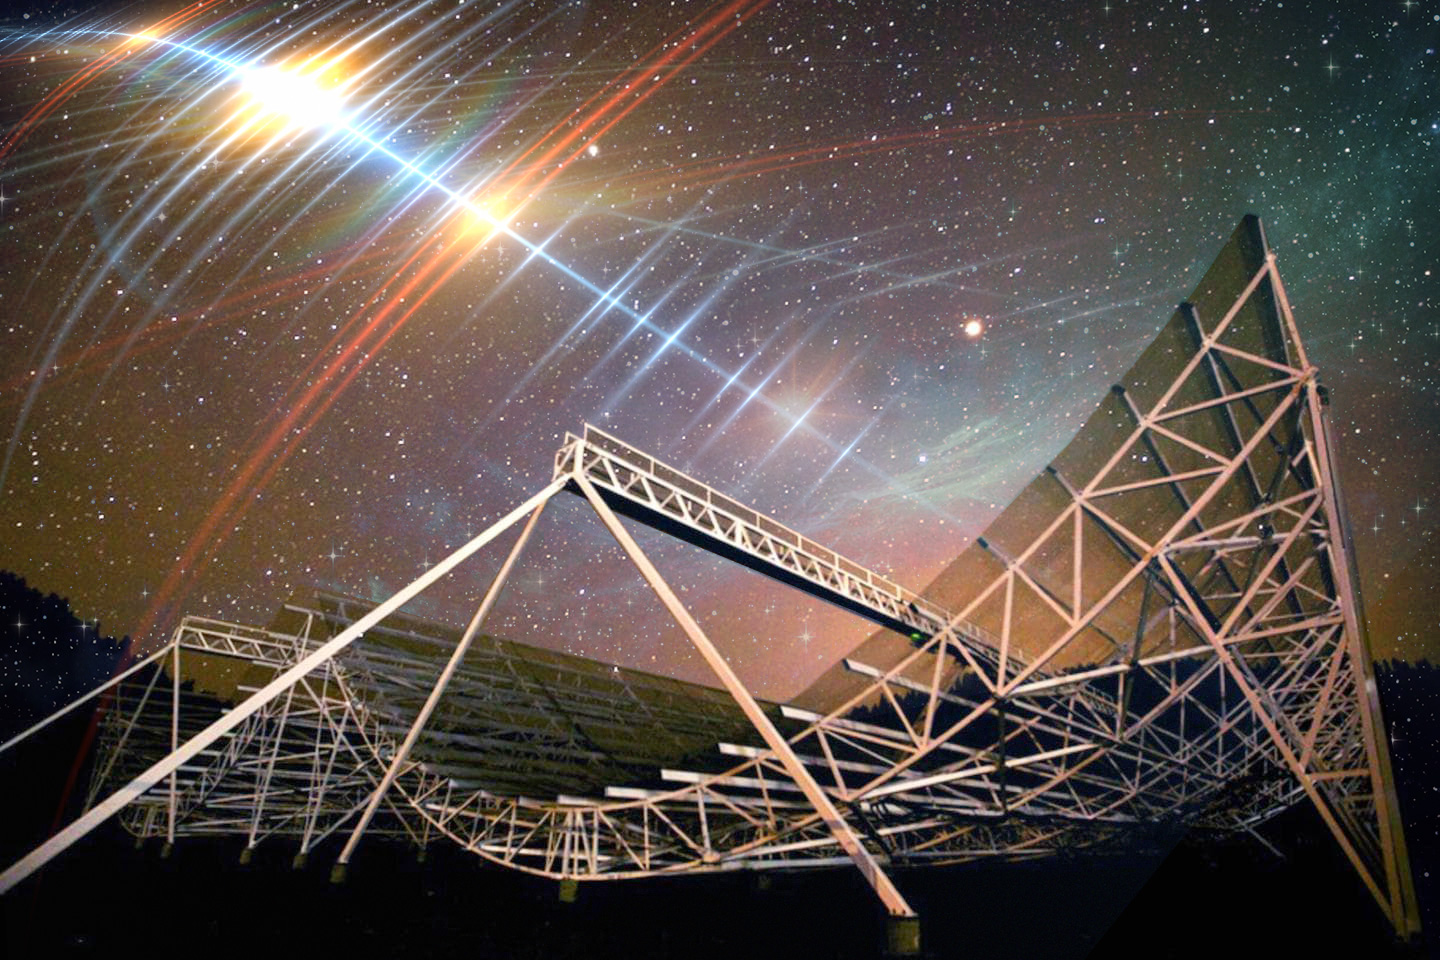 علماء الفلك يكتشفون “نبضات القلب” الراديوية على بعد مليارات السنين الضوئية من الأرض |  أخبار معهد ماساتشوستس للتكنولوجيا